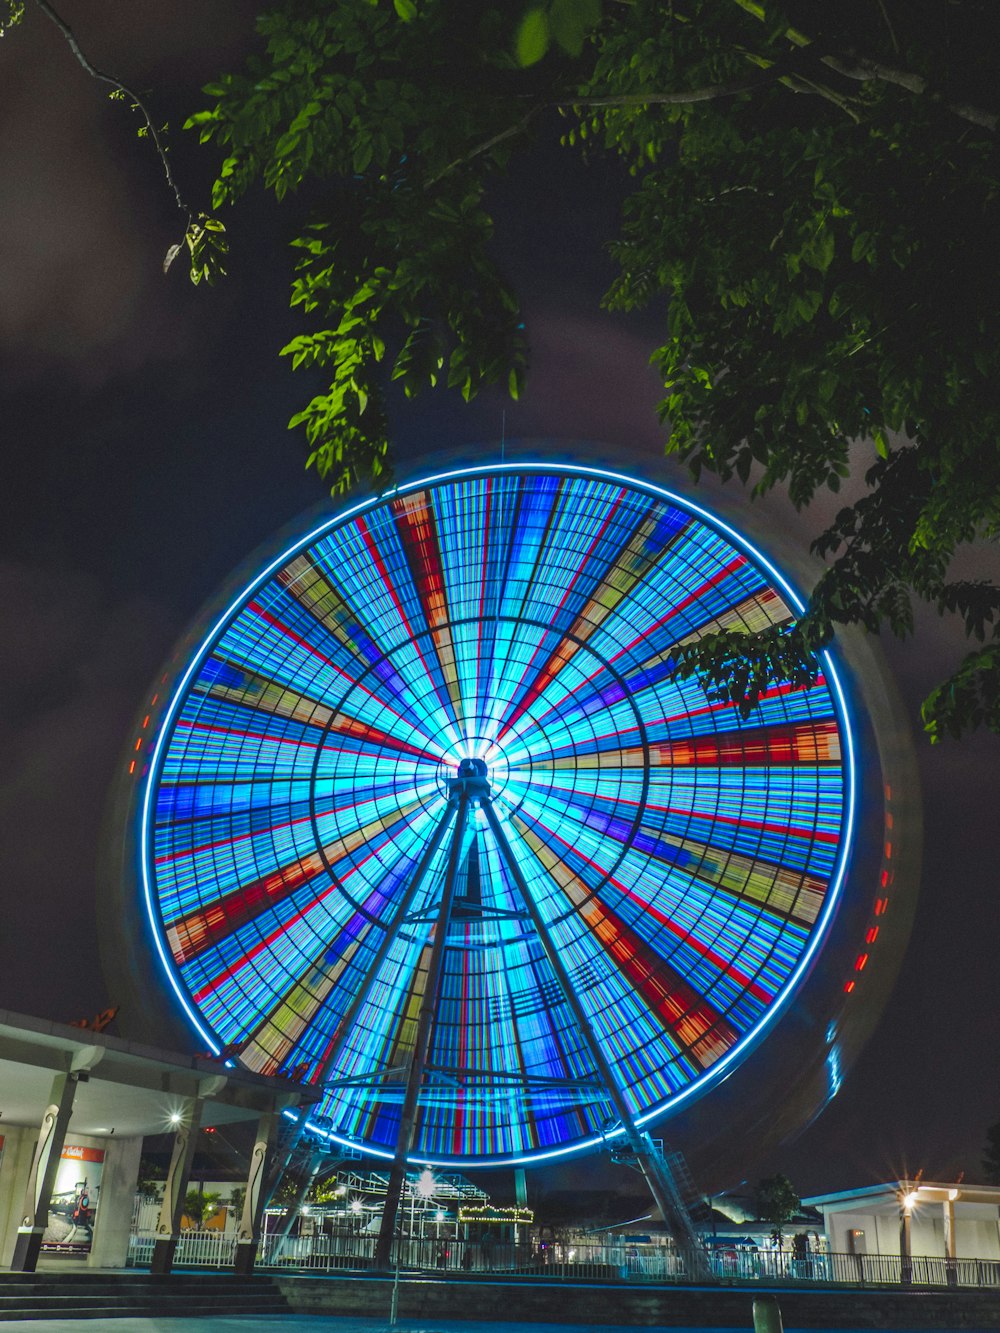 roda gigante multicolorida durante a noite